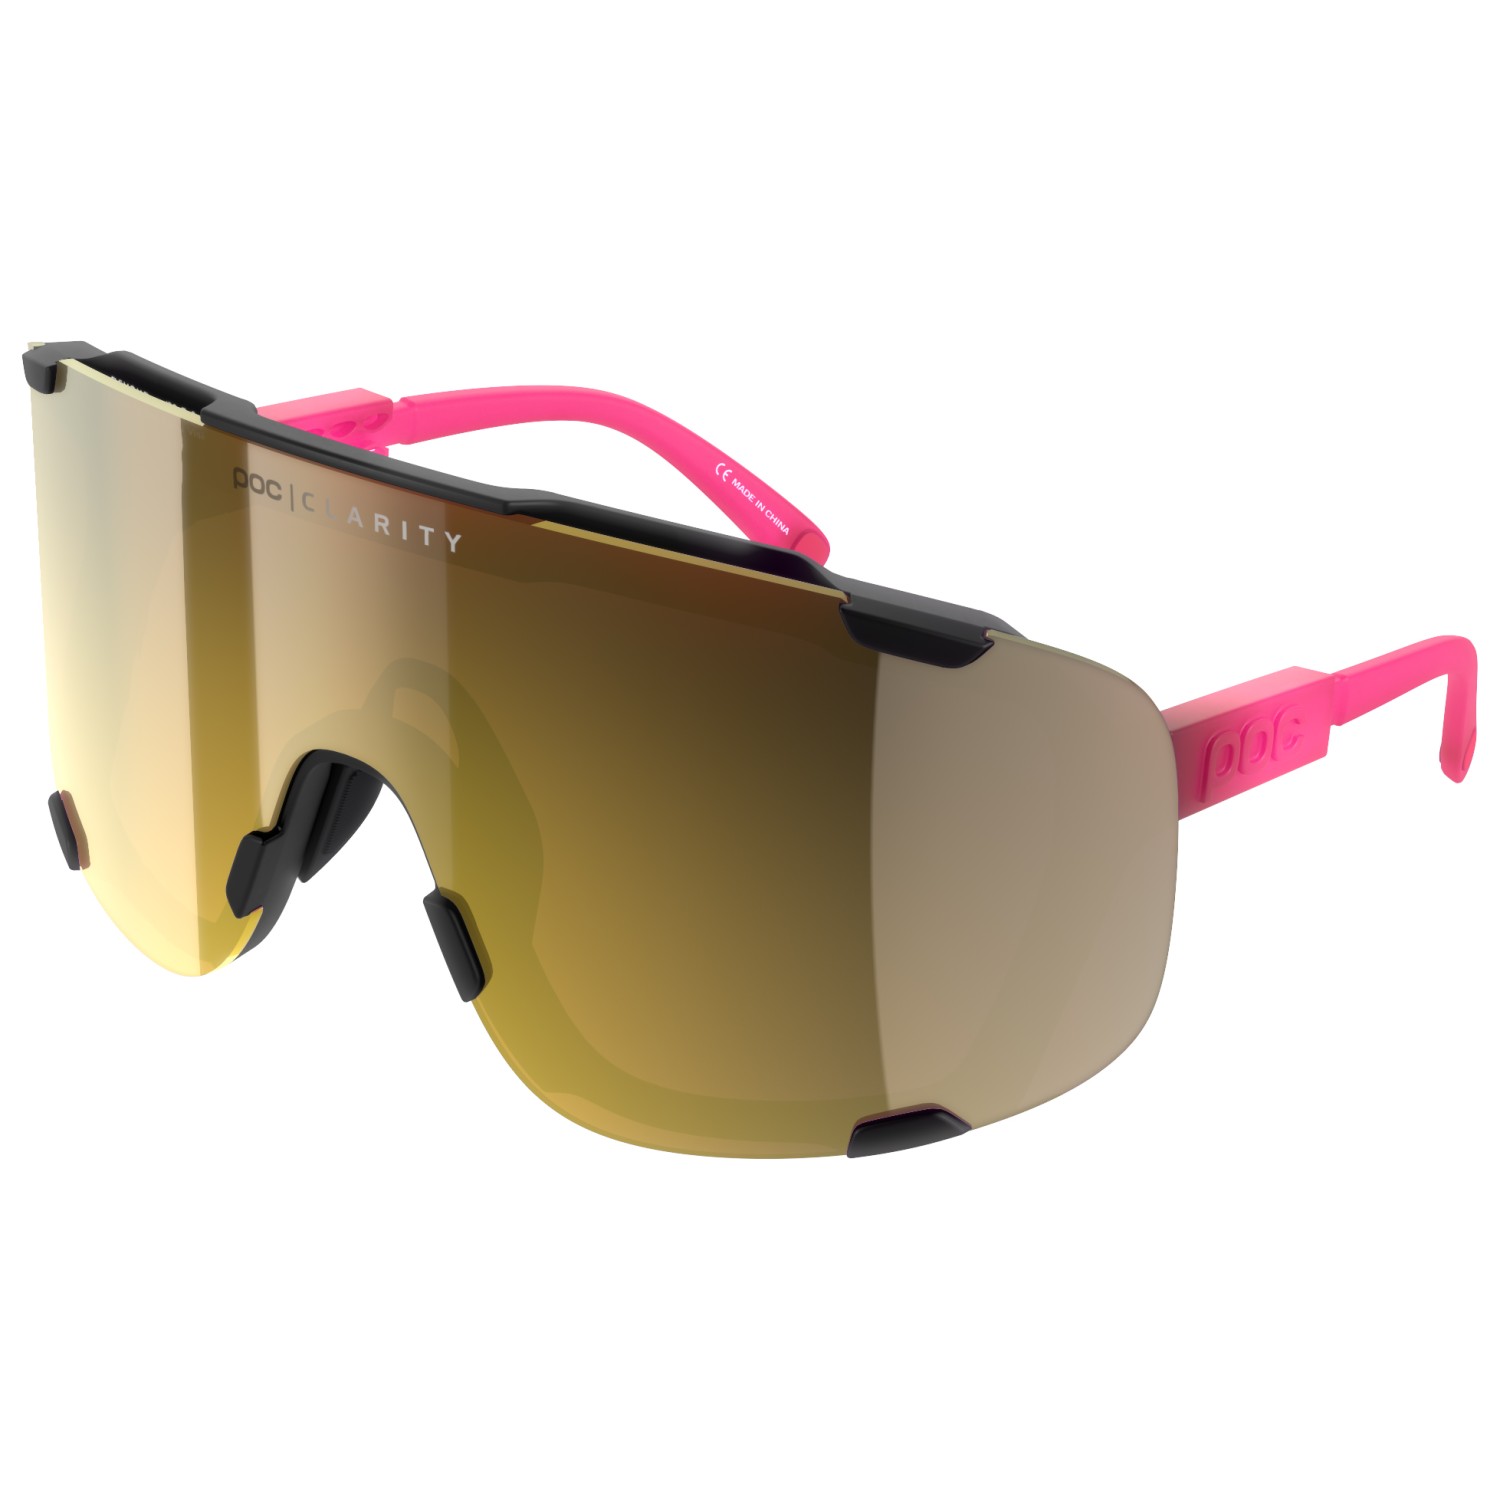 Велосипедные очки Poc Devour Mirror S2 (VLT 16%), цвет Fluorescent Pink/Uranium Black Translucent